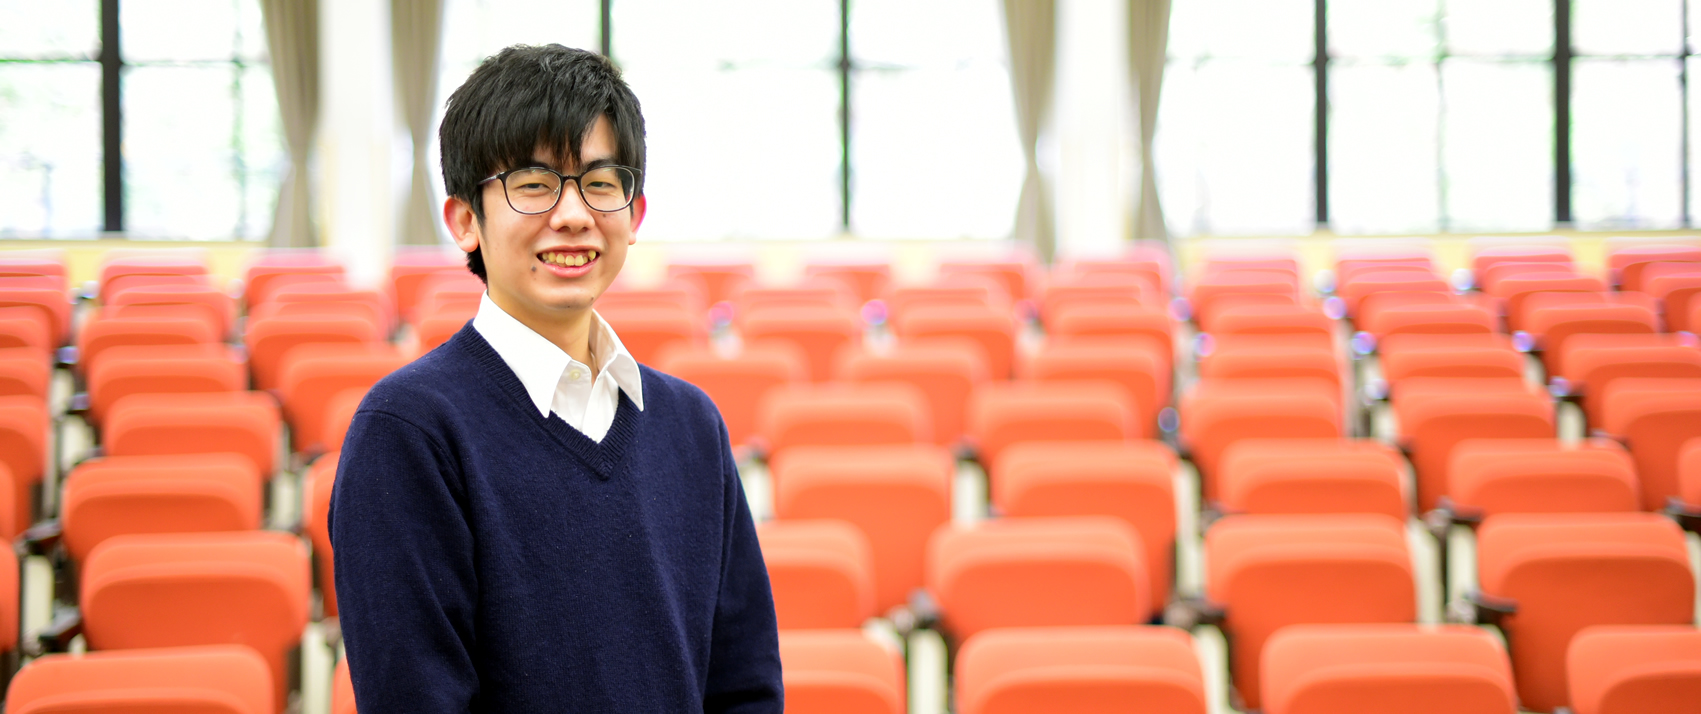 大学 という選択で視野が広がり 幼い頃からの夢を実現 広島経済大学